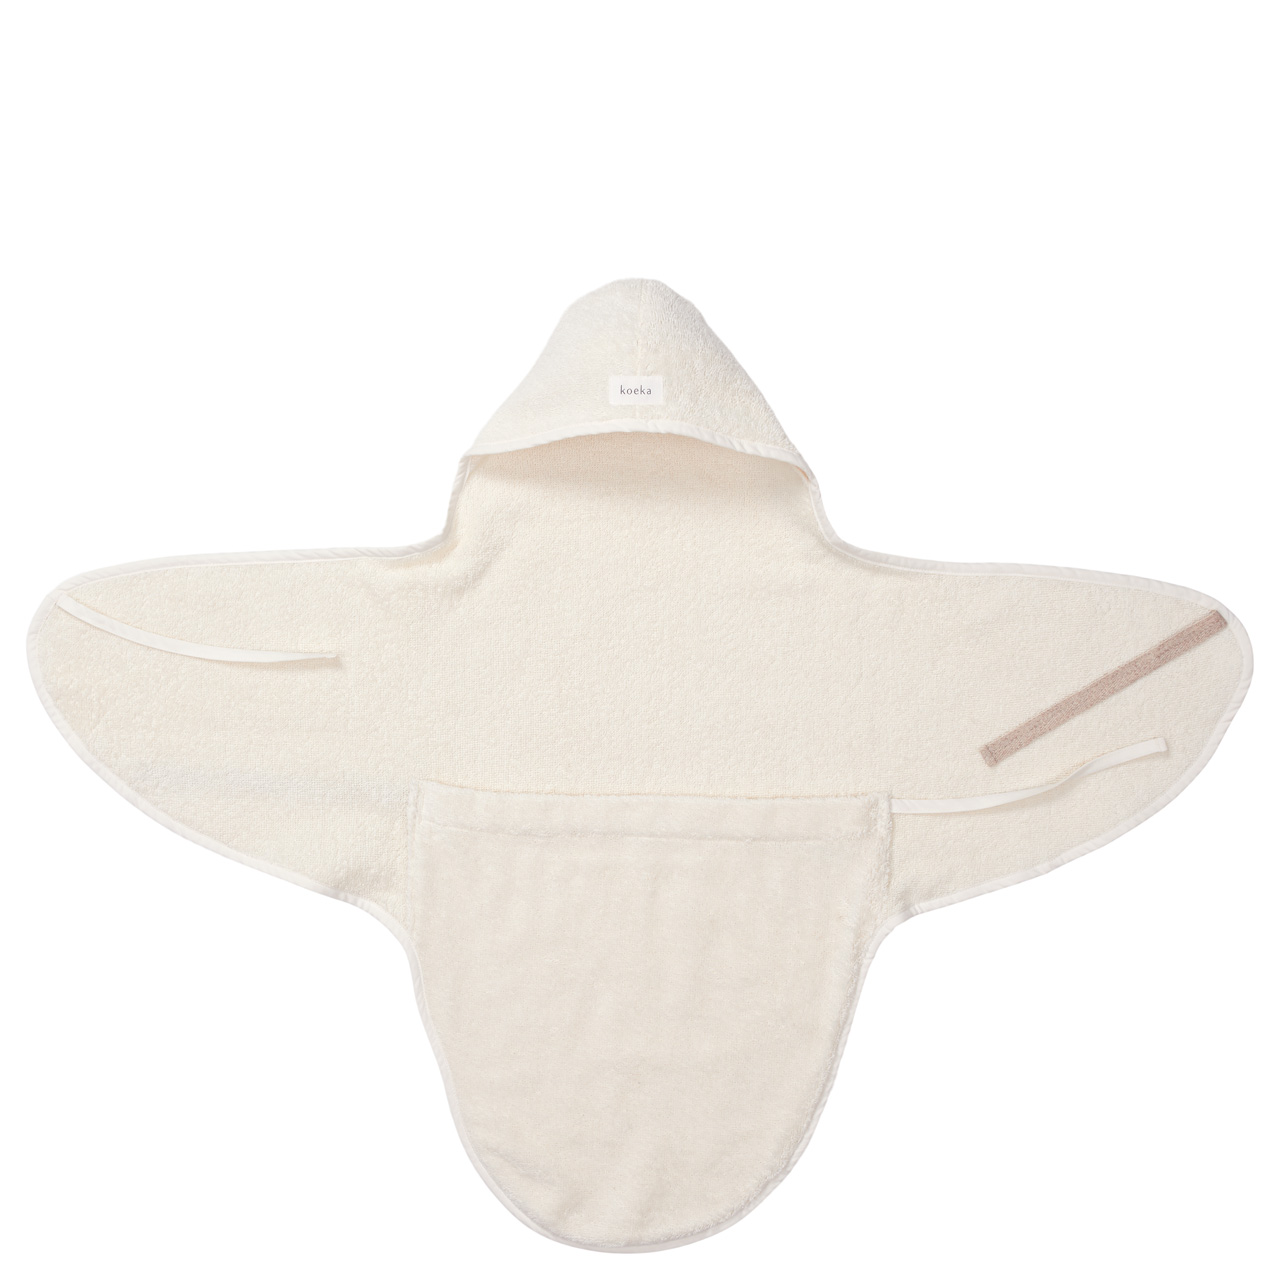 Umschlagtuch für Neugeborene Dijon Daily warm white